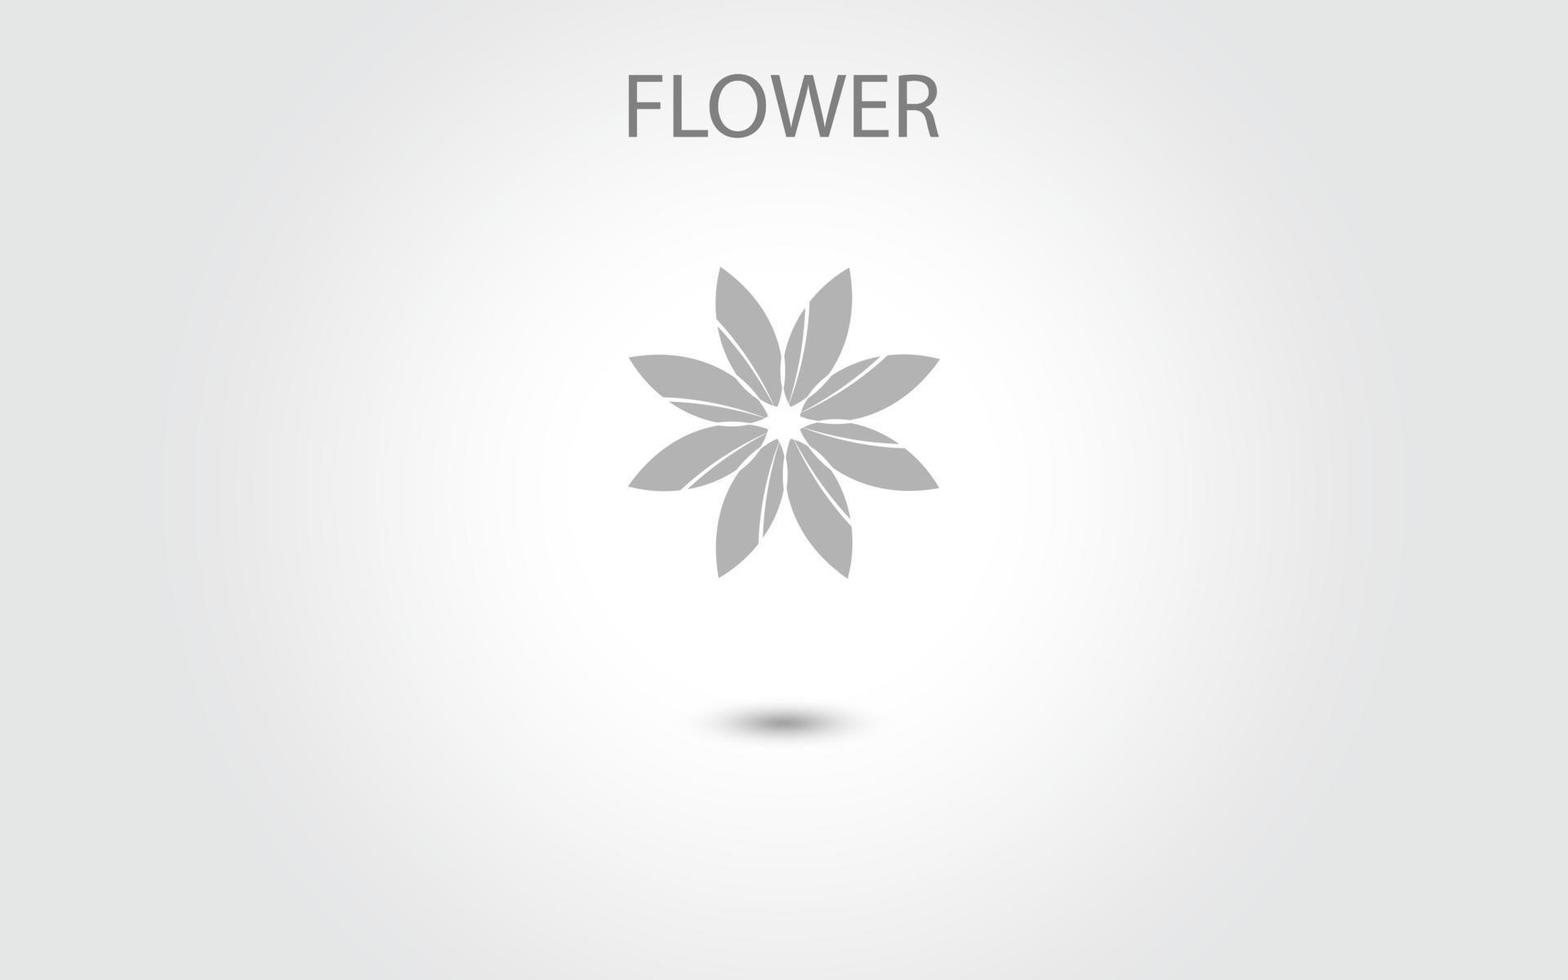 bloem pictogram vector geïsoleerd op een witte achtergrond, hand getrokken bloem pictogram illustratie, bloemen logo sjabloon, symbool natuurlijke pictogram